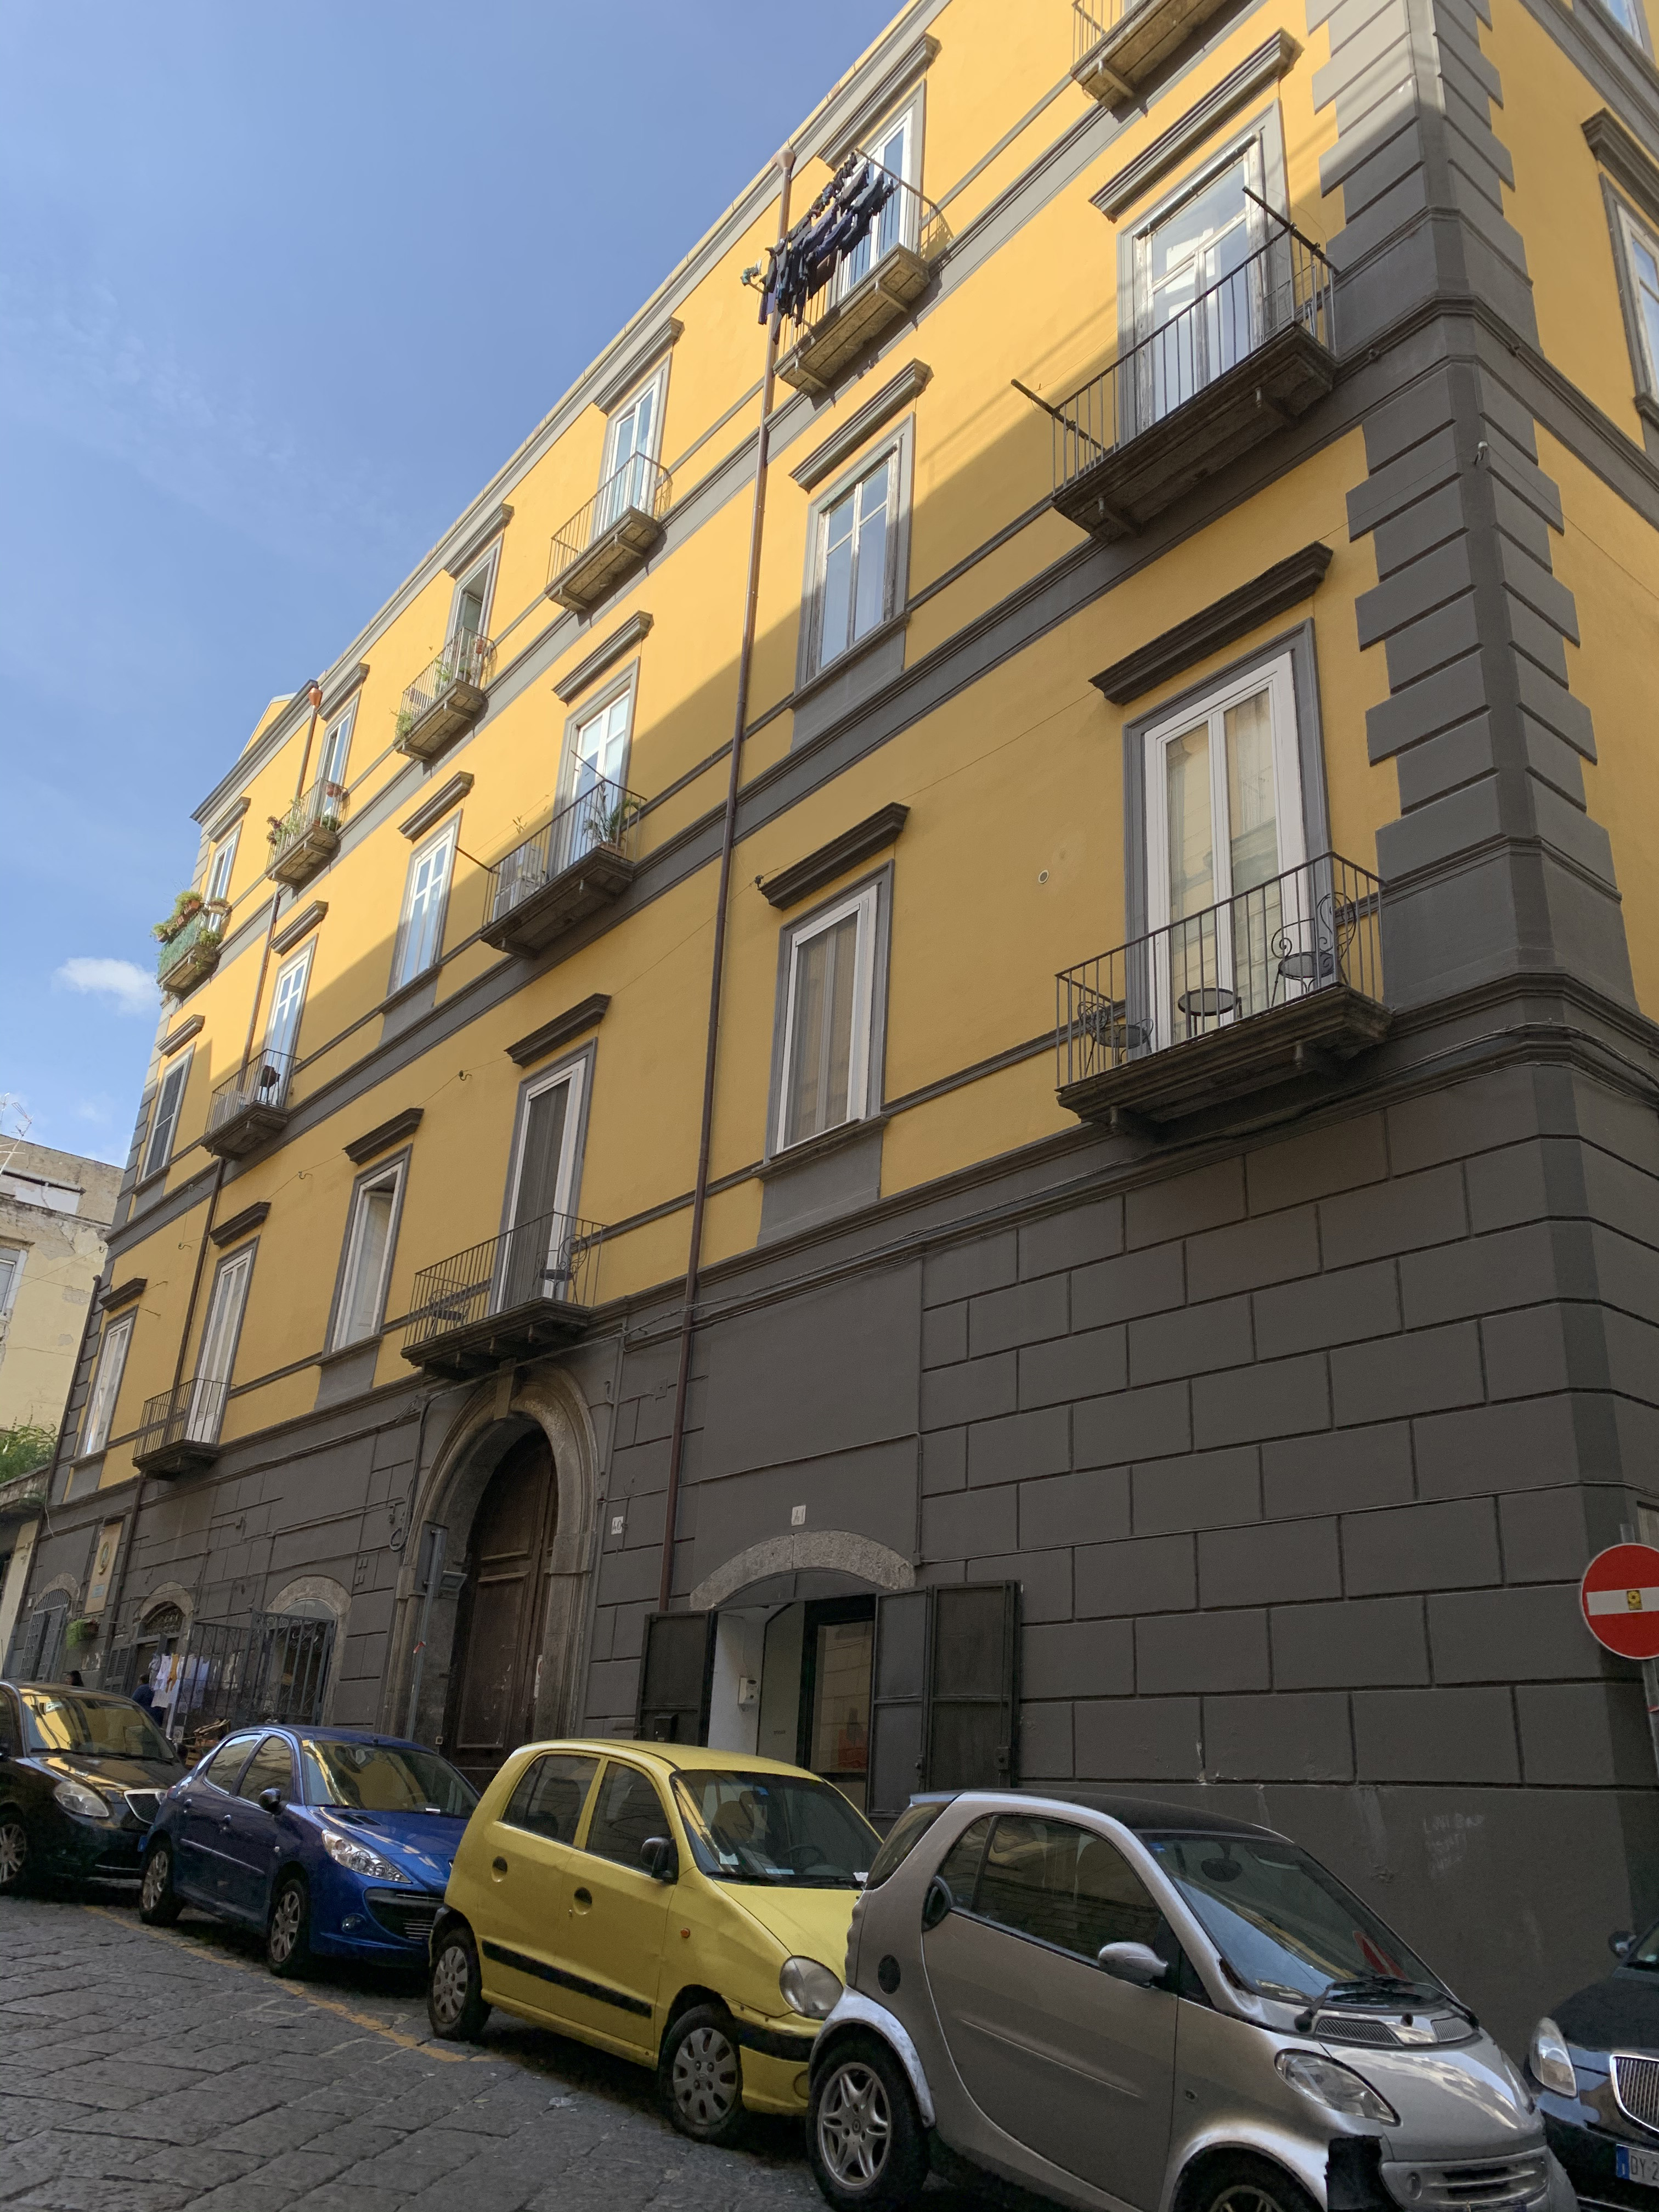 [Palazzo privato in via Salvatore Tommasi, 40] (palazzo, privato) - Napoli (NA)  (XVI, primo quarto; XVII, prima metà)